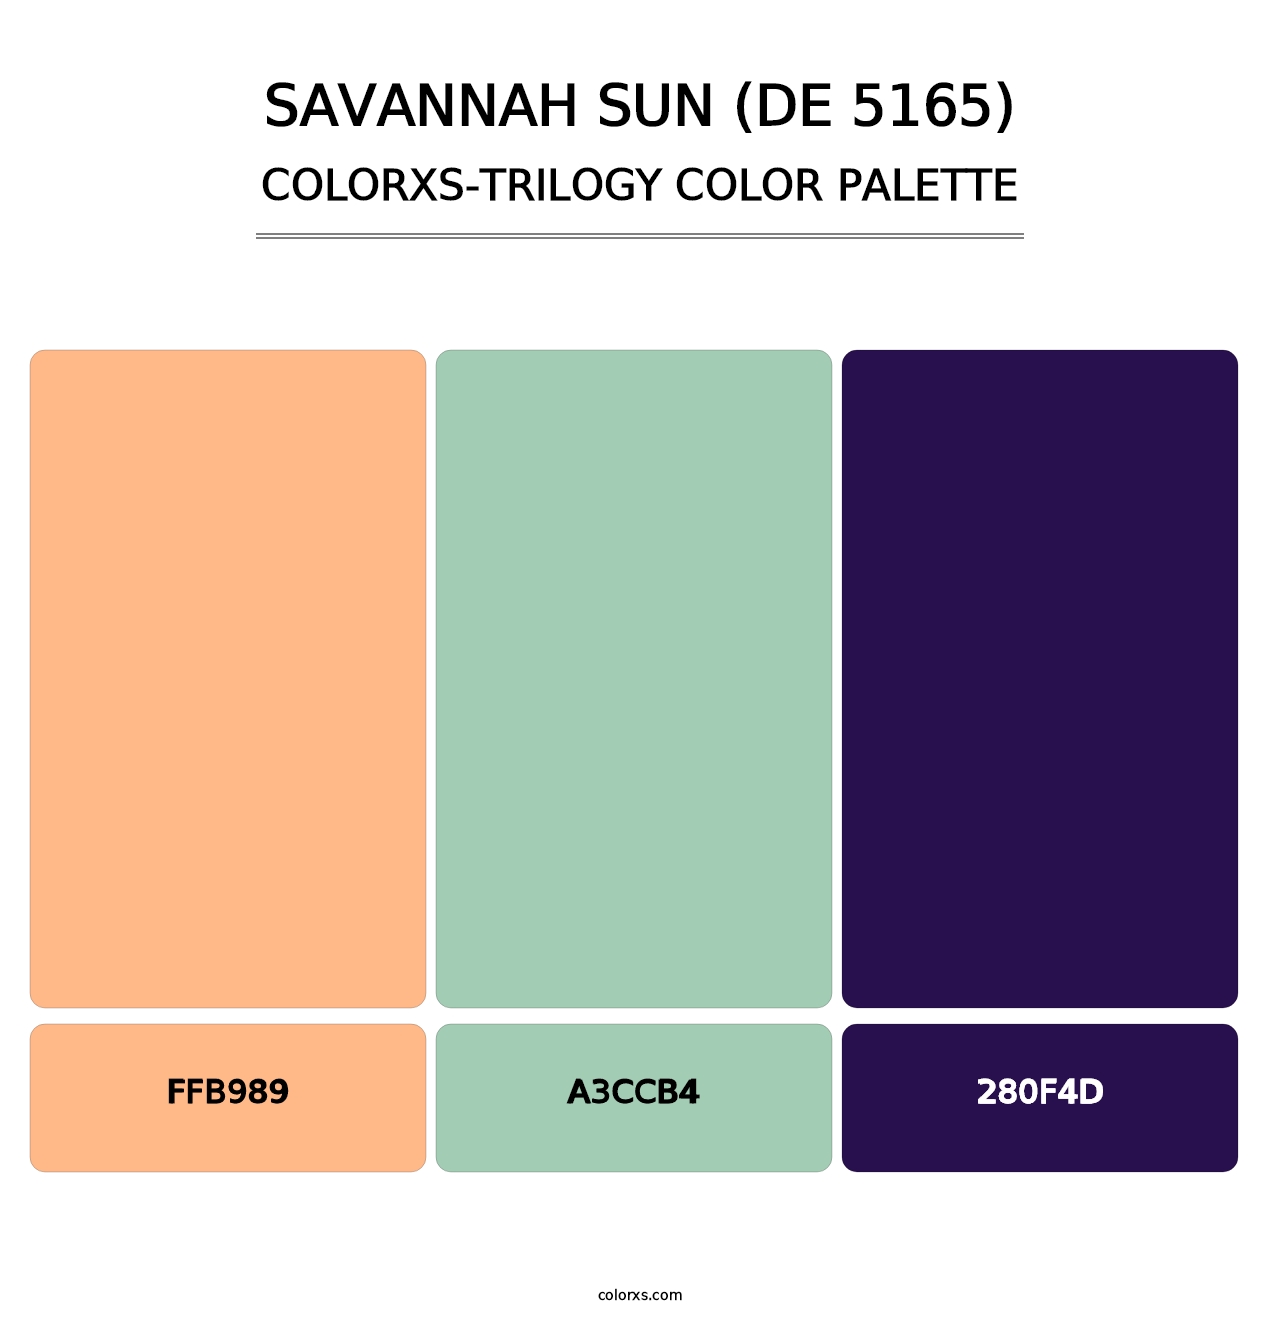 Savannah Sun (DE 5165) - Colorxs Trilogy Palette